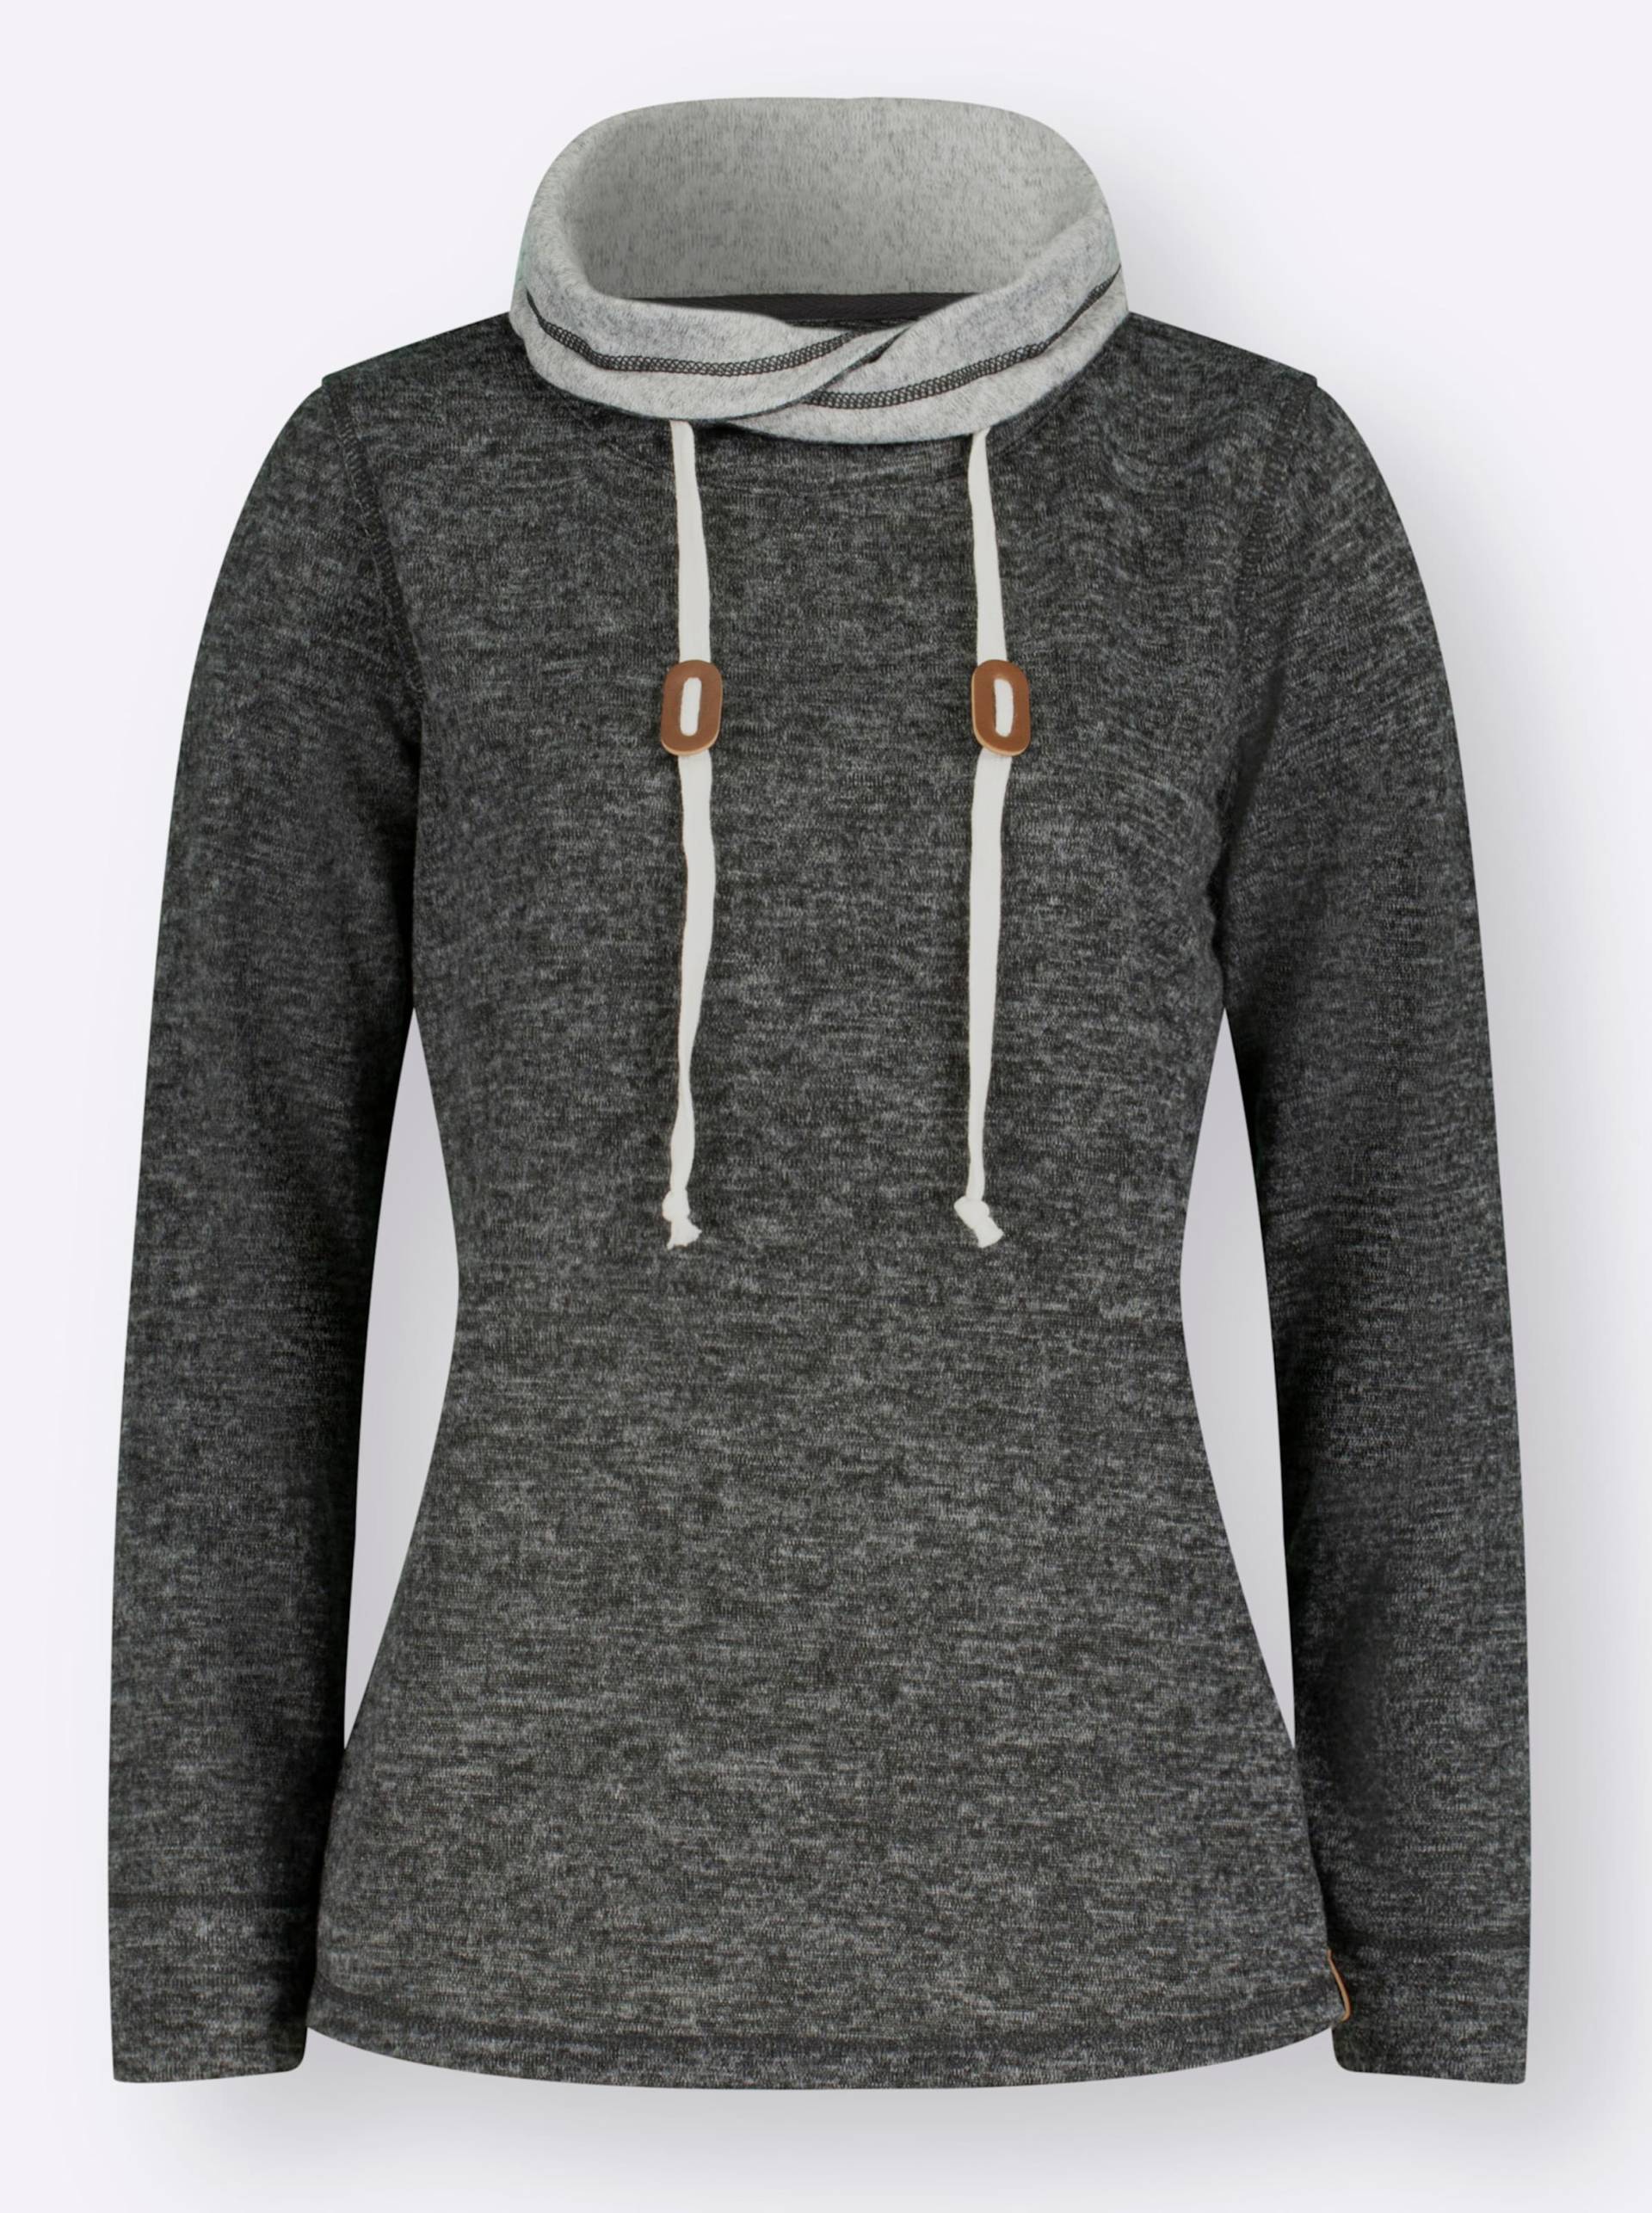 Sweatshirt in graphit-grau-meliert von heine